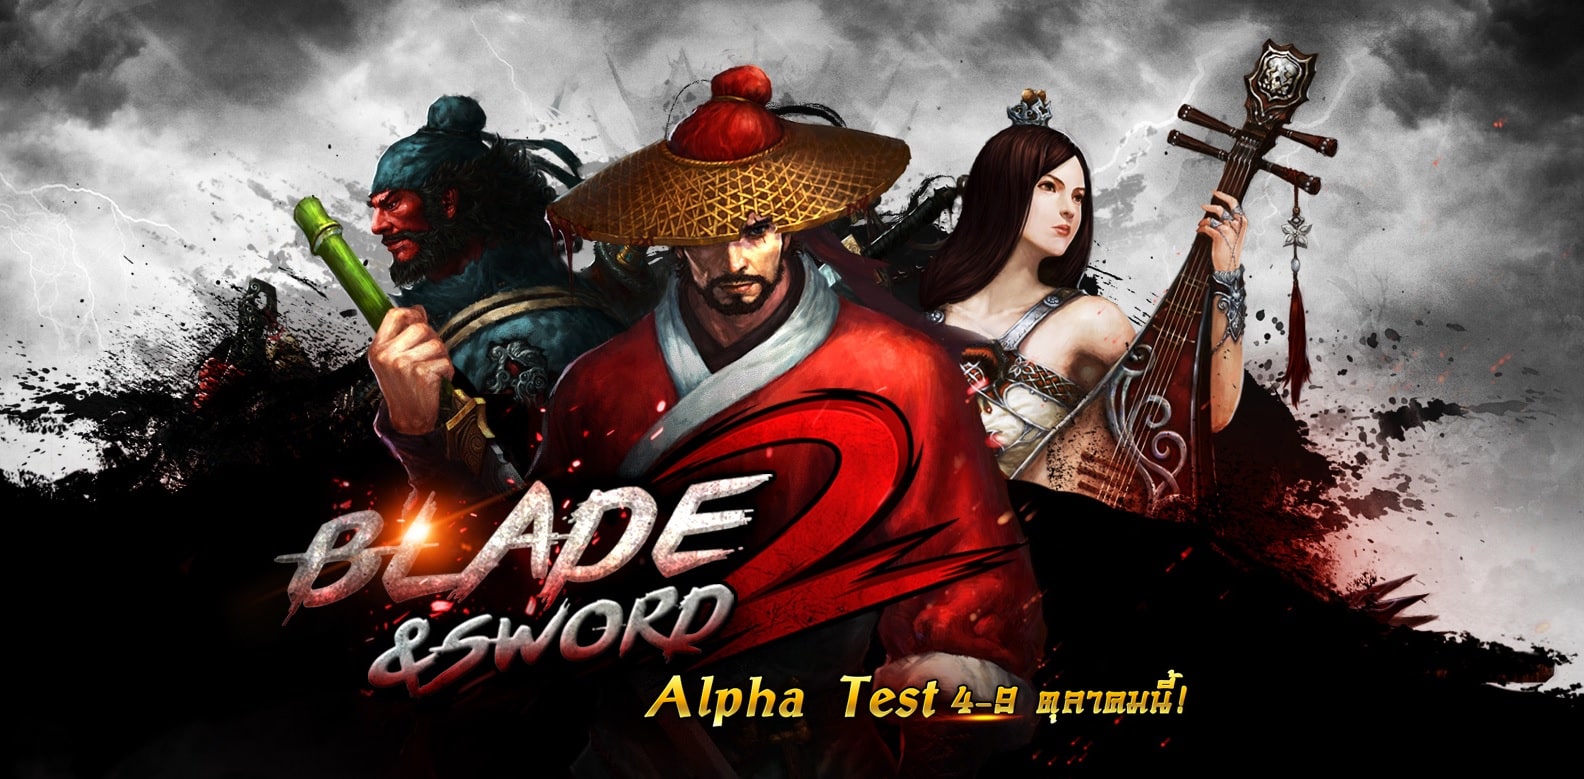 Blade & Sword 2 ประกาศเปิด Alpha Test วันที่ 4 – 9 ต.ค. นี้